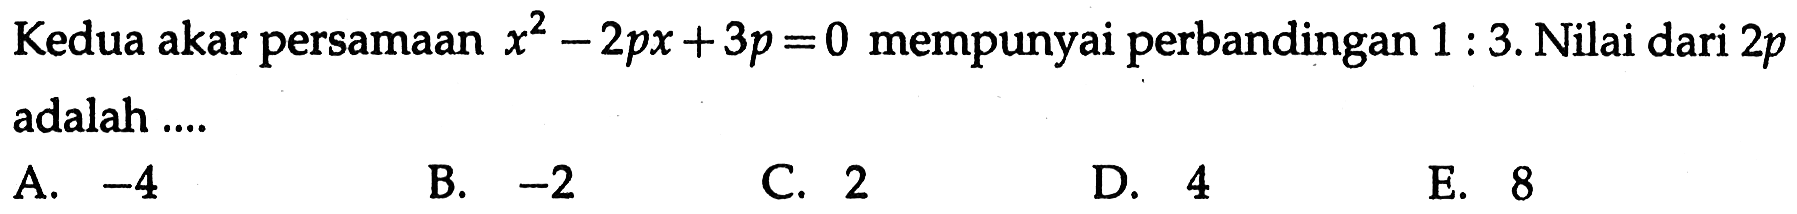 Kedua akar persamaan x^2-2px+3p=0 mempunyai perbandingan 1:3. Nilai dari 2p adalah ....